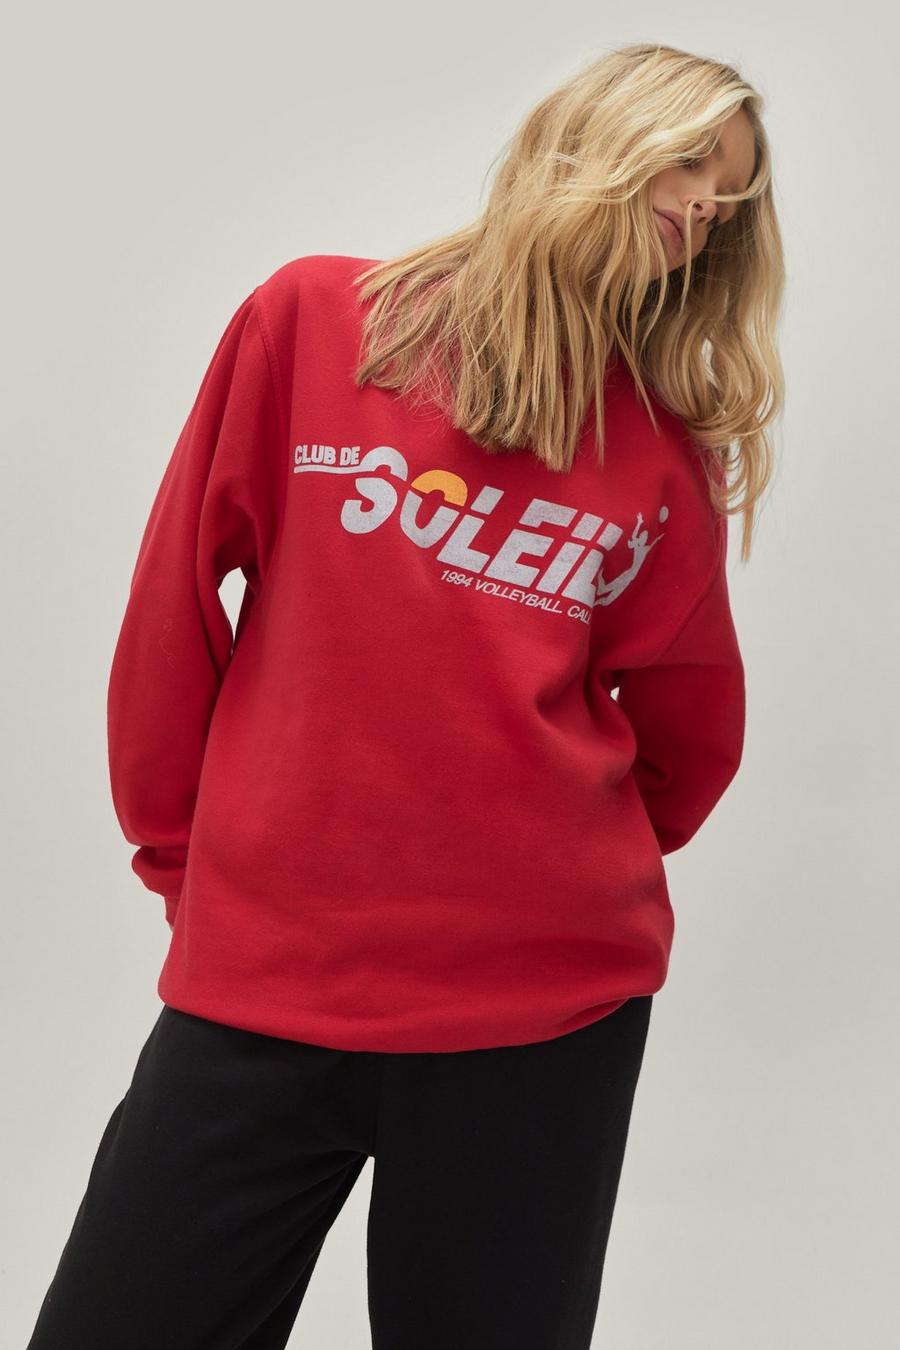 Club De Soleil Graphic Oversized Sweatshirt